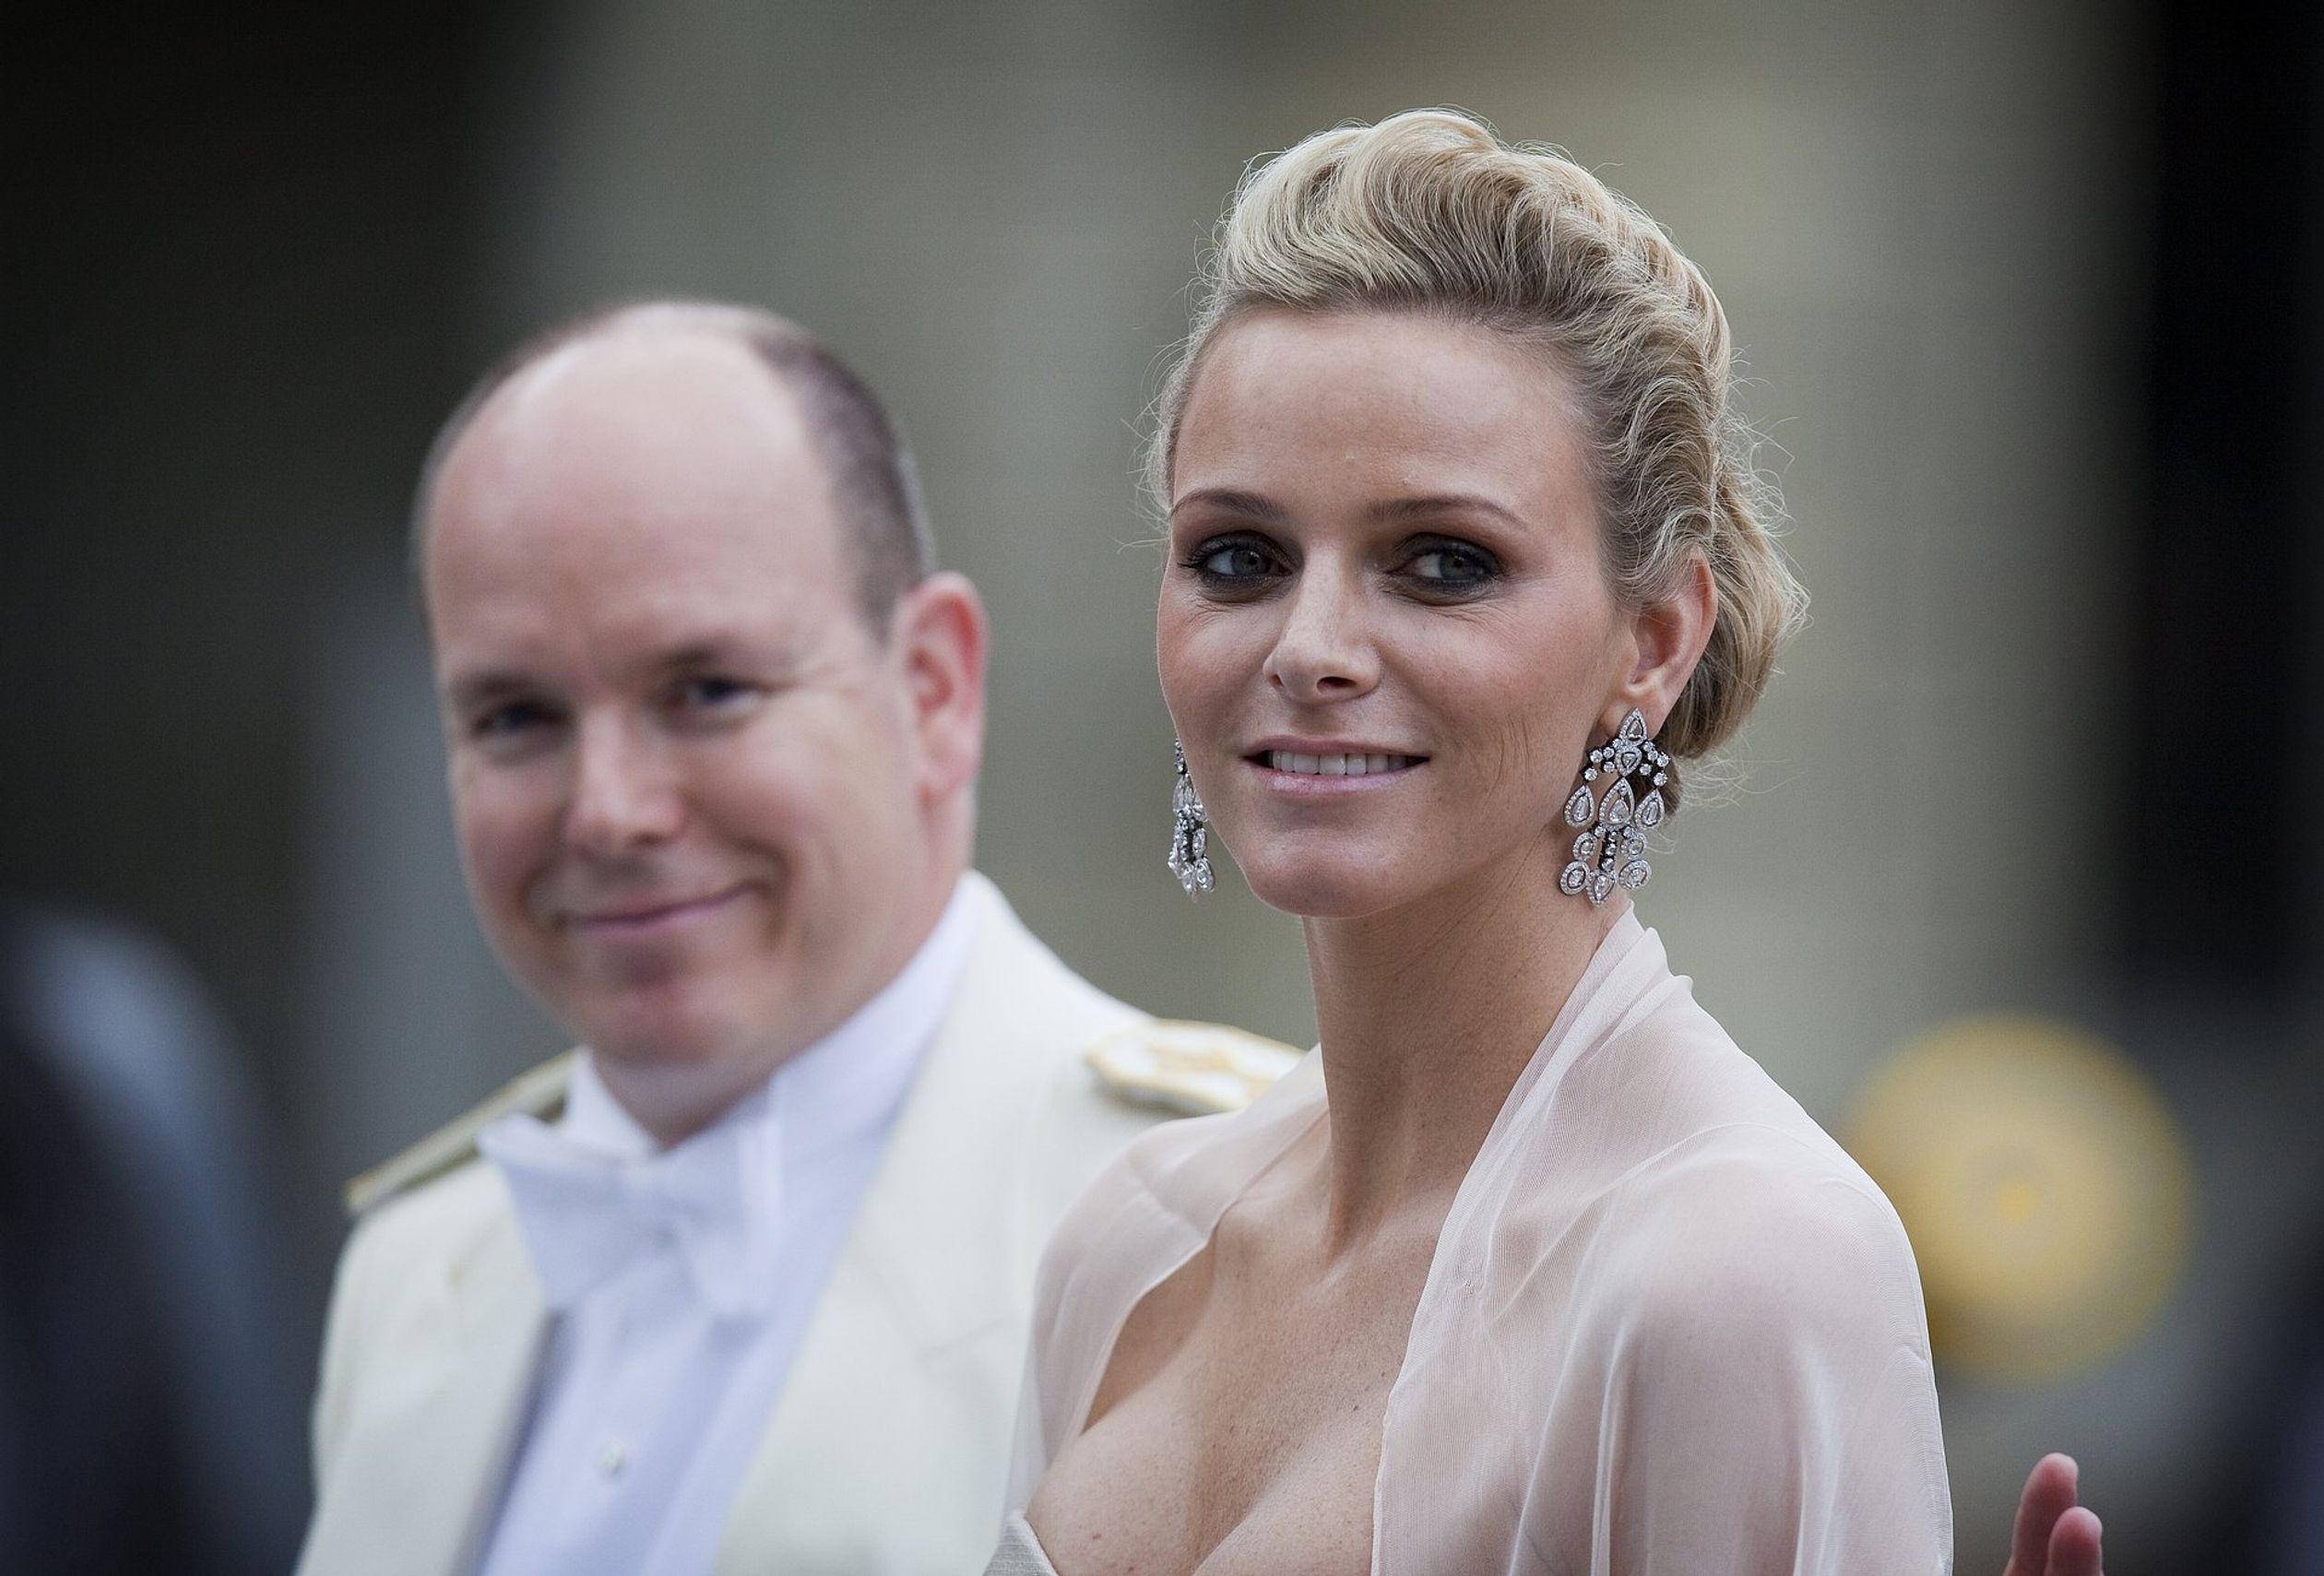 Tijdens het huwelijk van prinses Victoria van Zweden is het haar van Charlène losjes opgestoken.